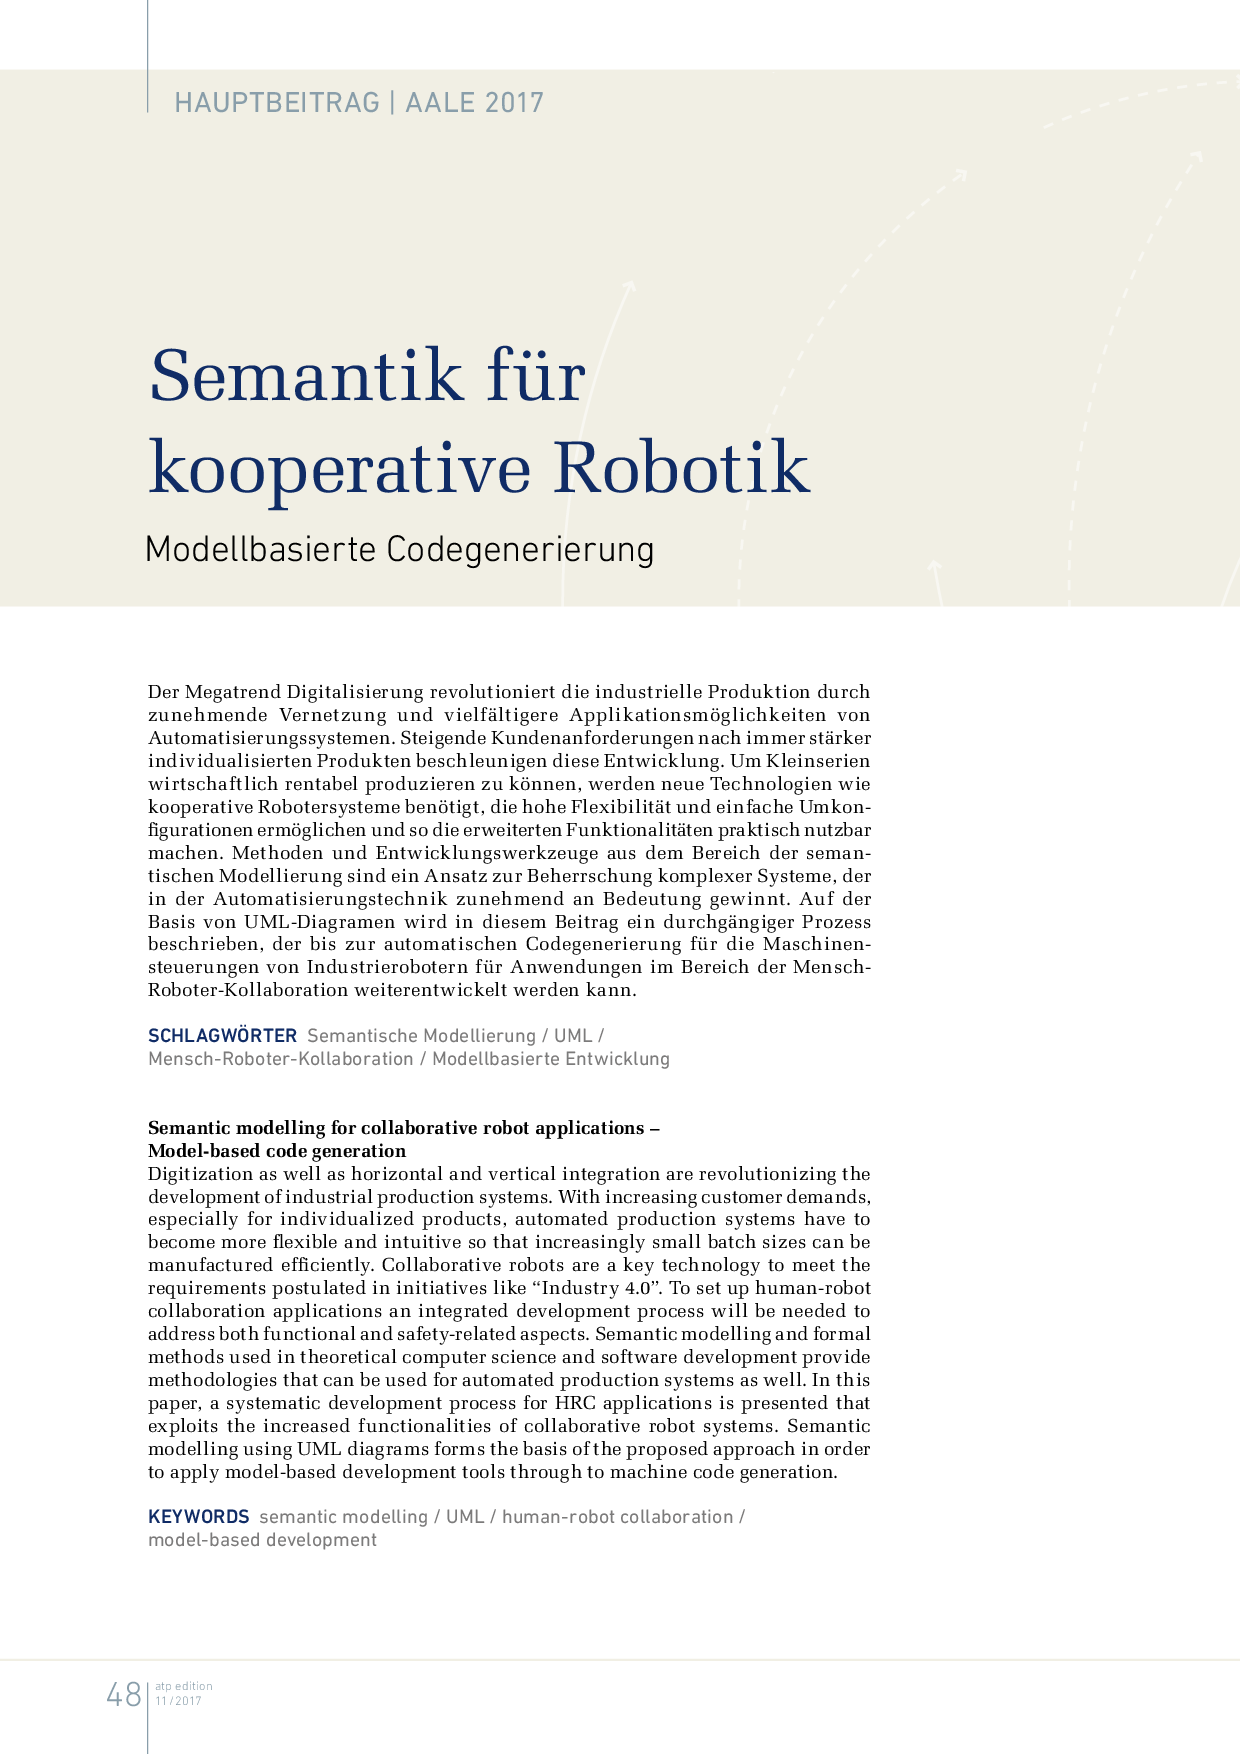 Semantik für kooperative Robotik